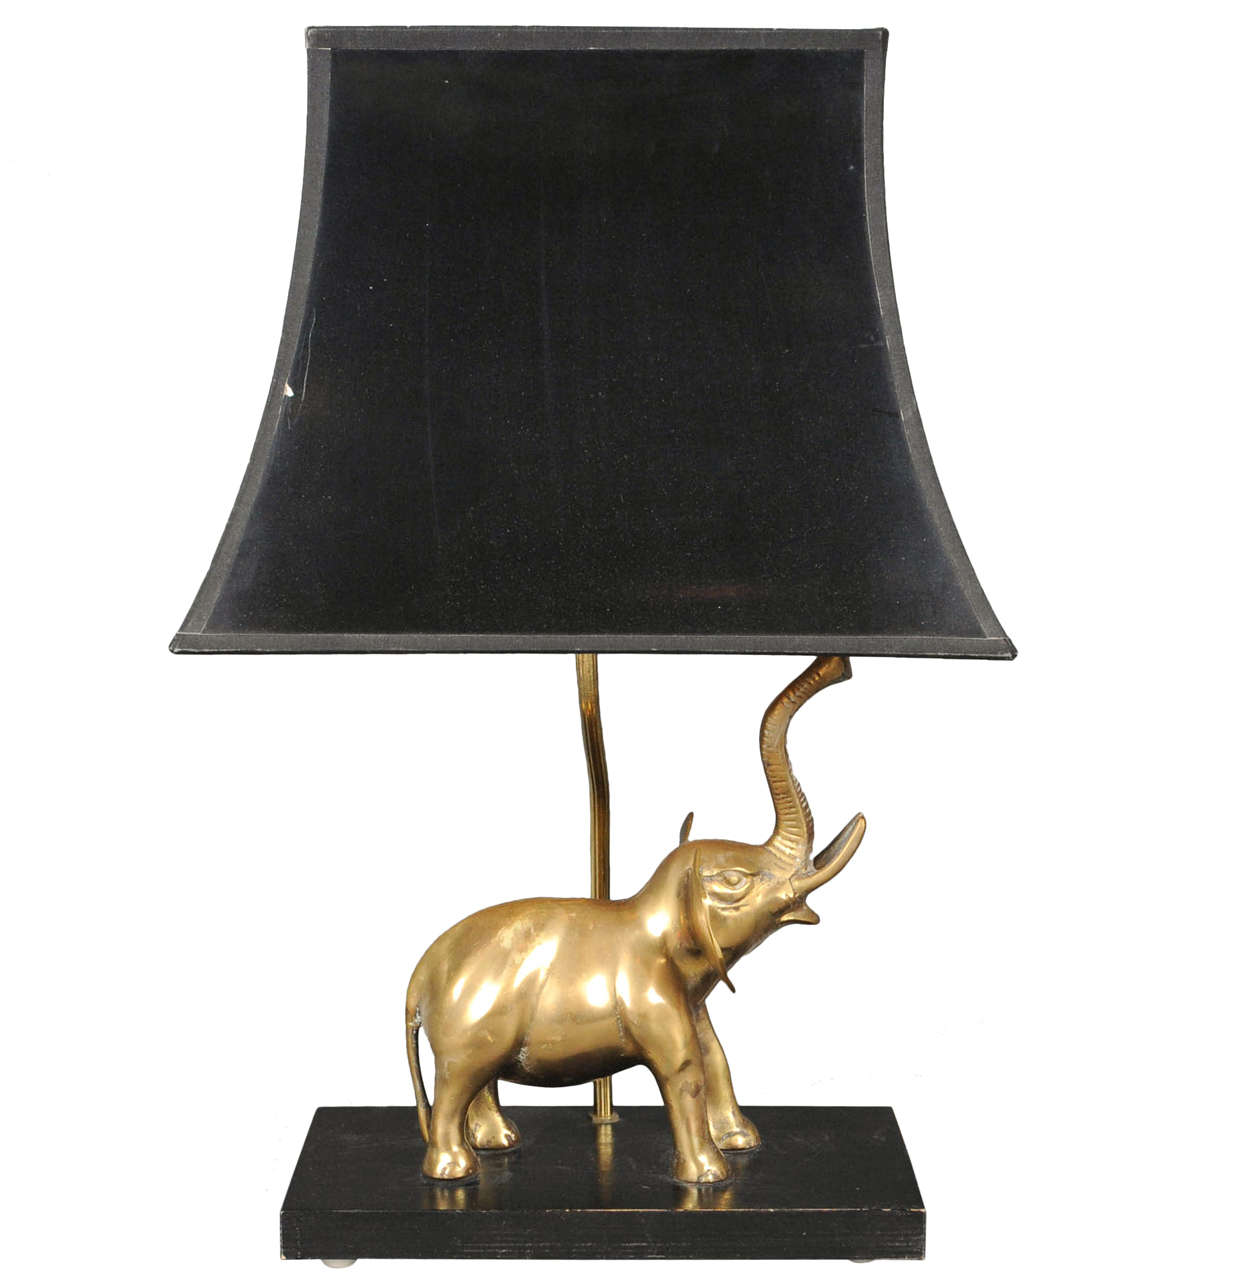 Maison Charles elephant lamp